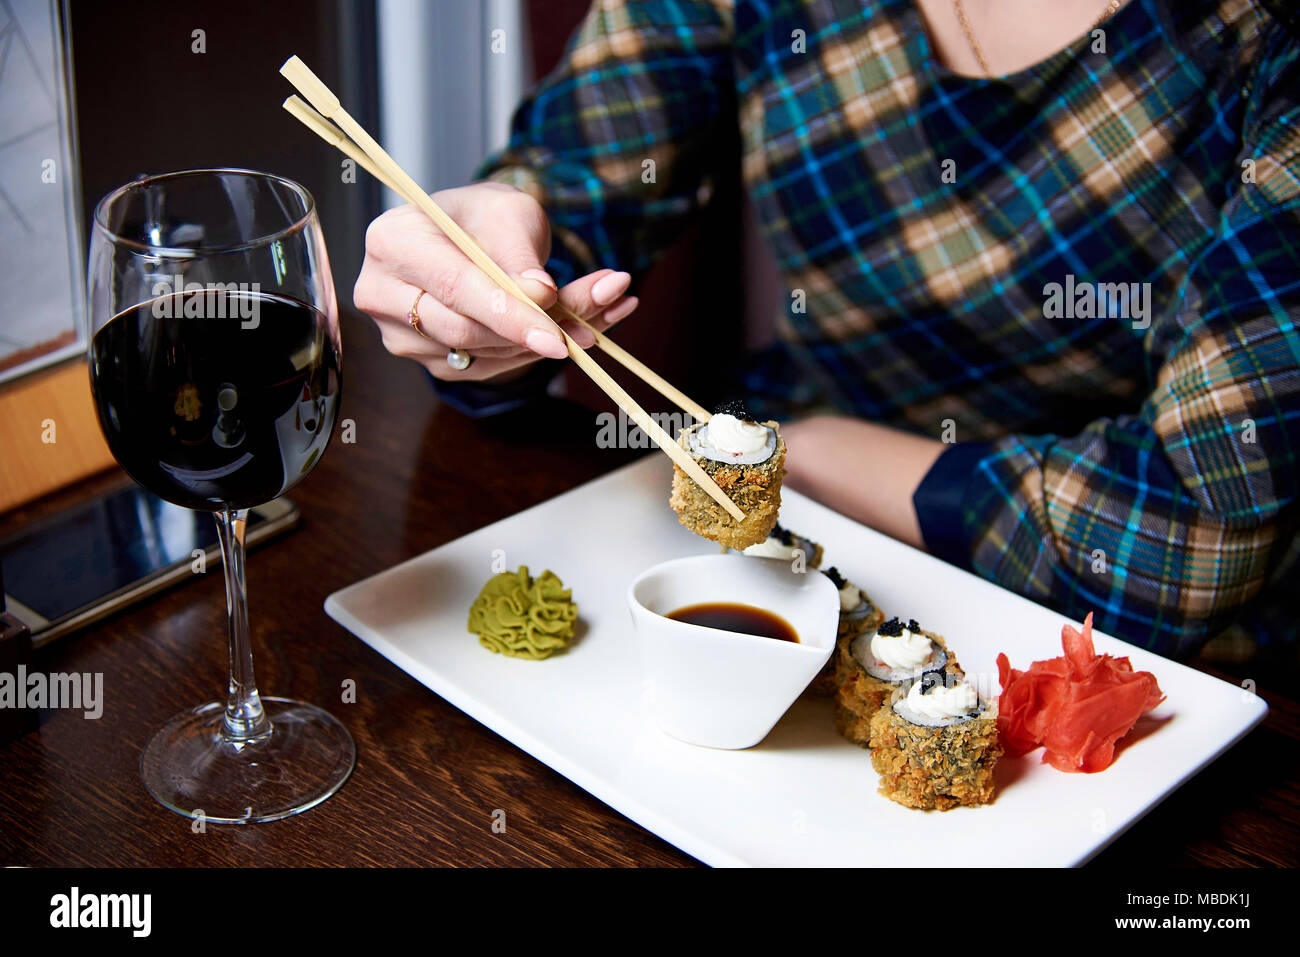 La chica de la mano sujeta el rollo con palos de bambú Fotografía de stock  - Alamy